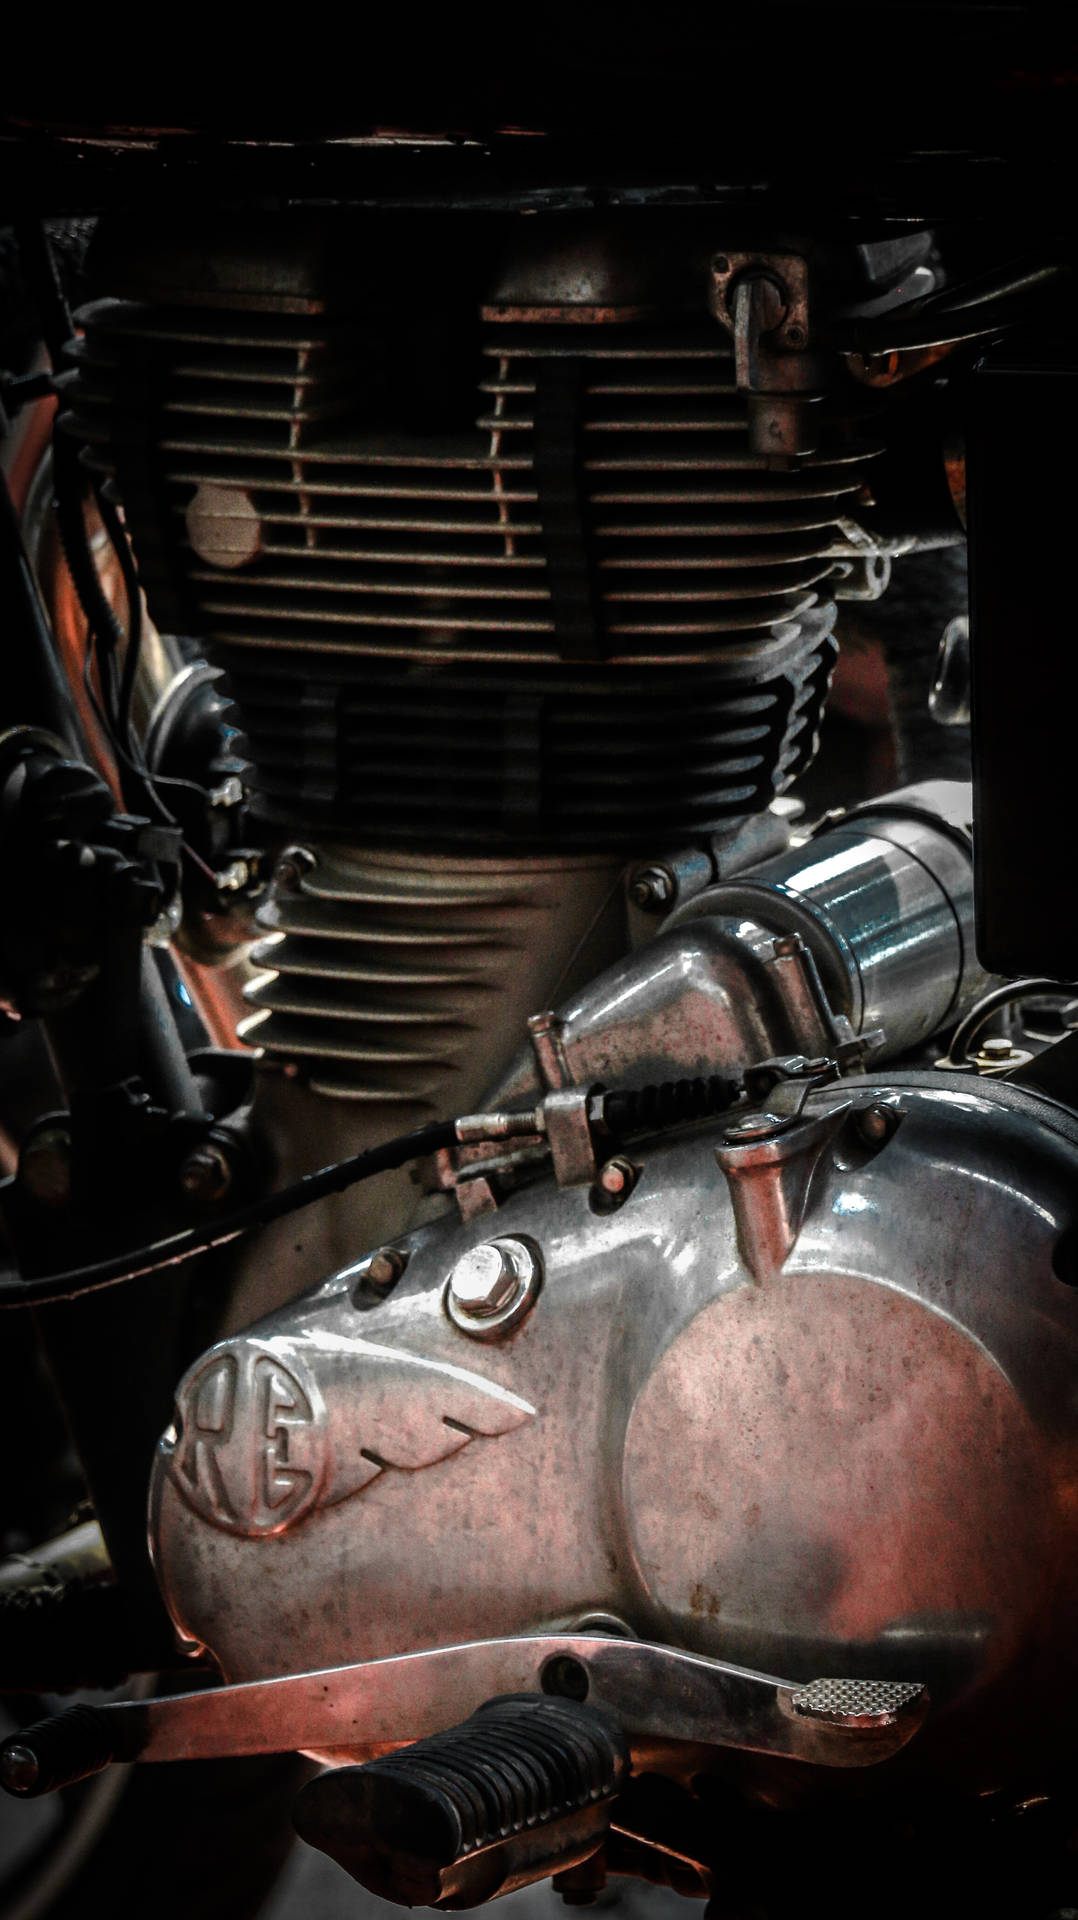 A Sleek Modern Engine In Detail. Background